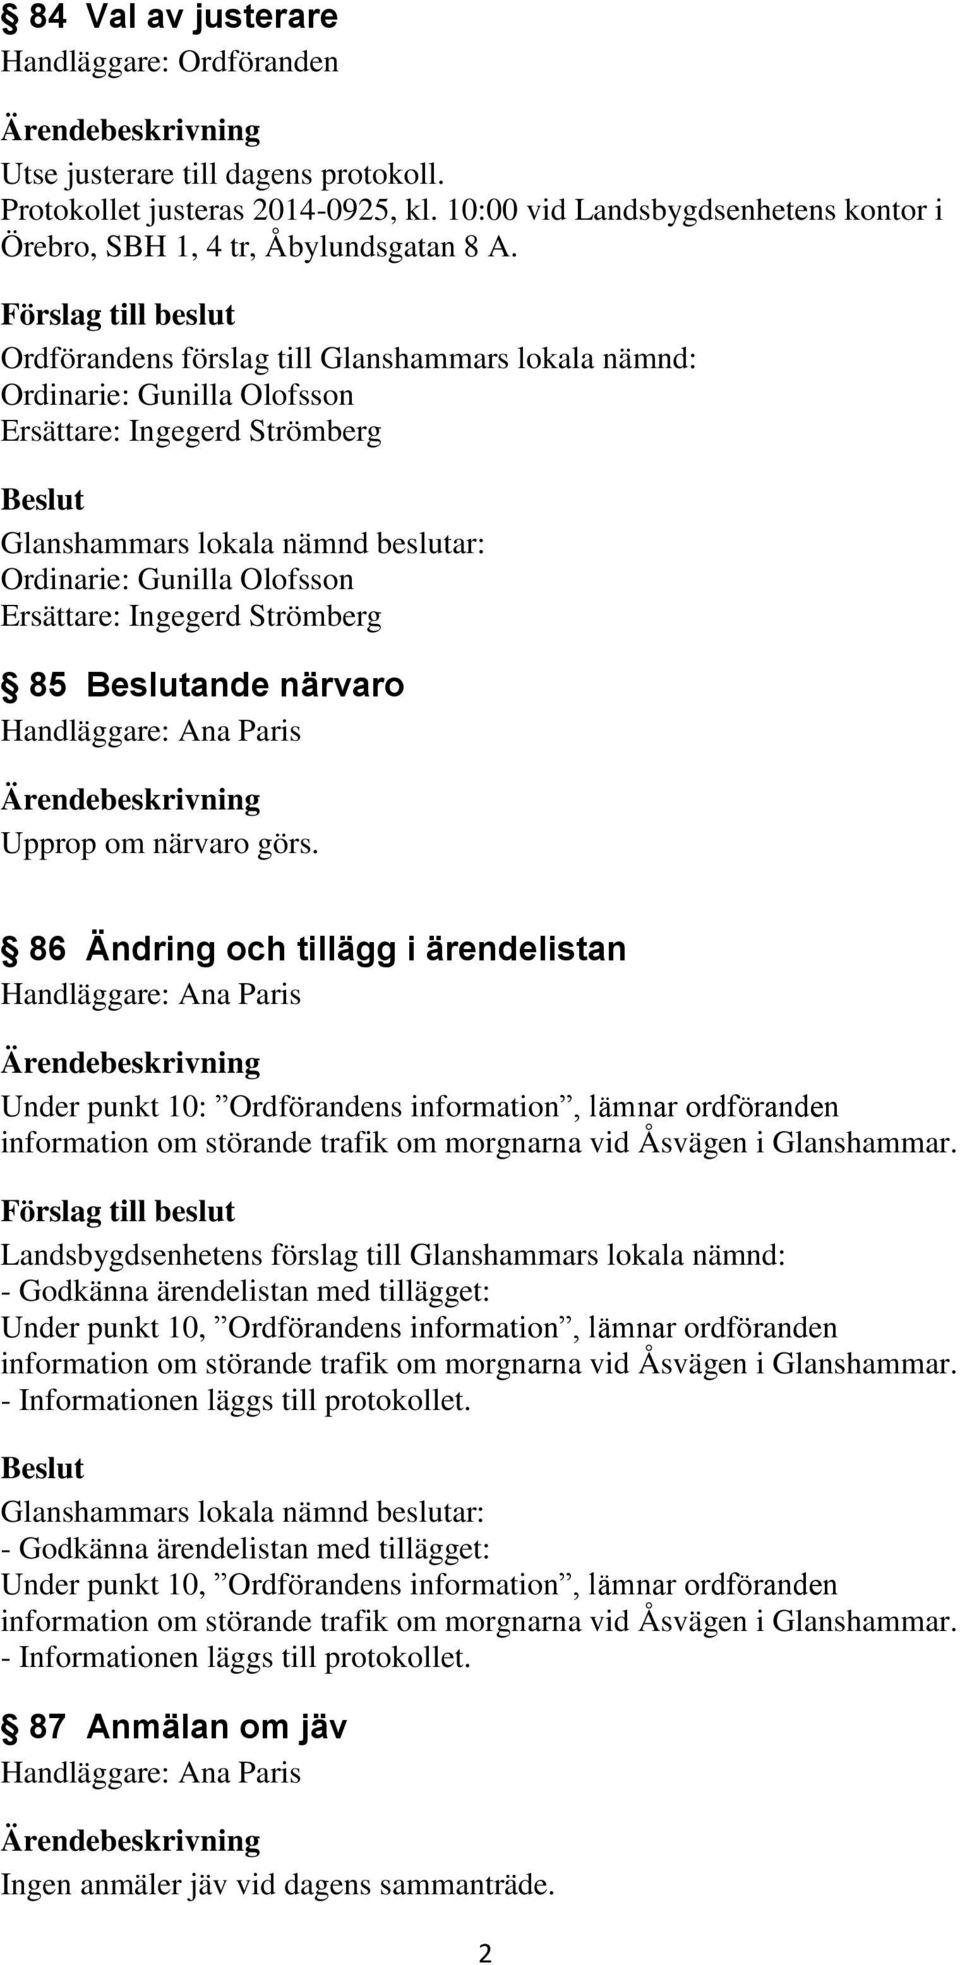 närvaro görs. 86 Ändring och tillägg i ärendelistan Under punkt 10: Ordförandens information, lämnar ordföranden information om störande trafik om morgnarna vid Åsvägen i Glanshammar.